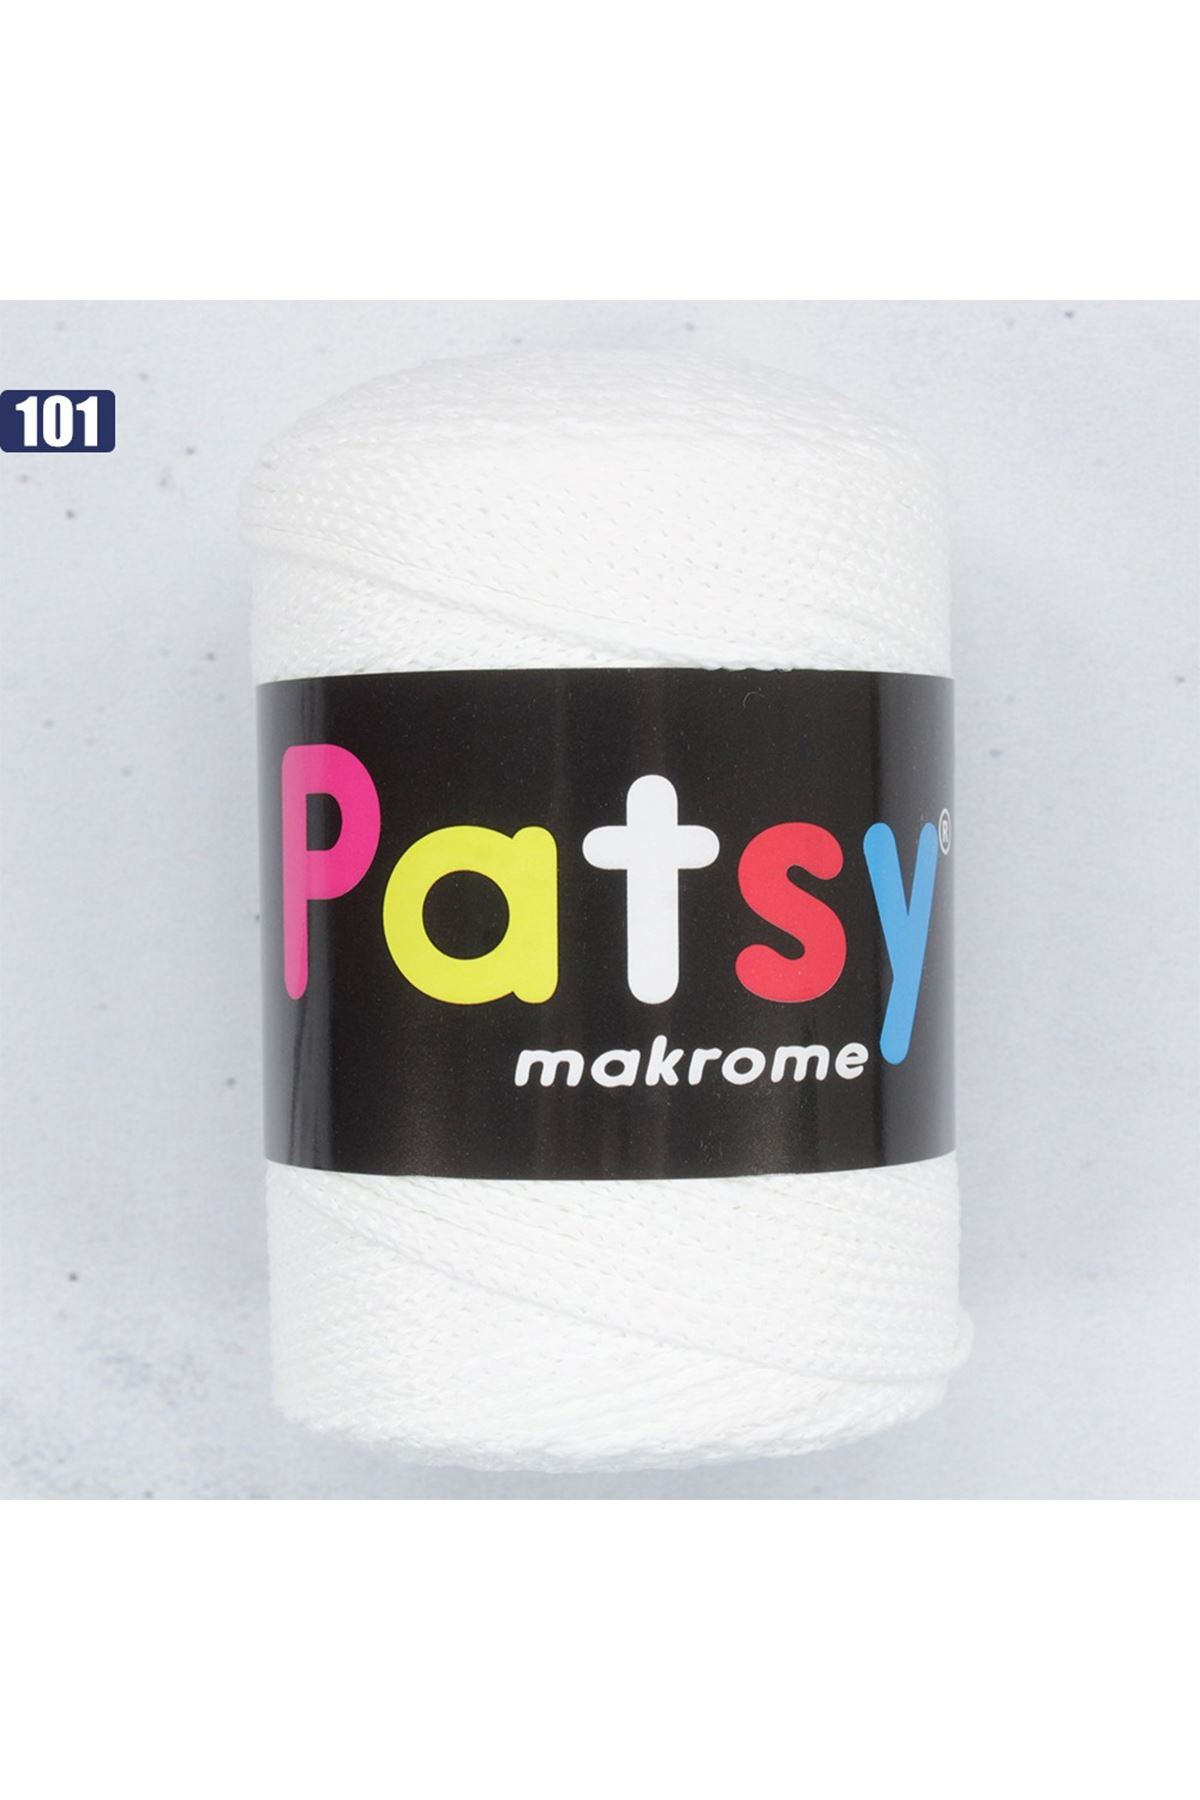 Patsy Makrome İpi - 101